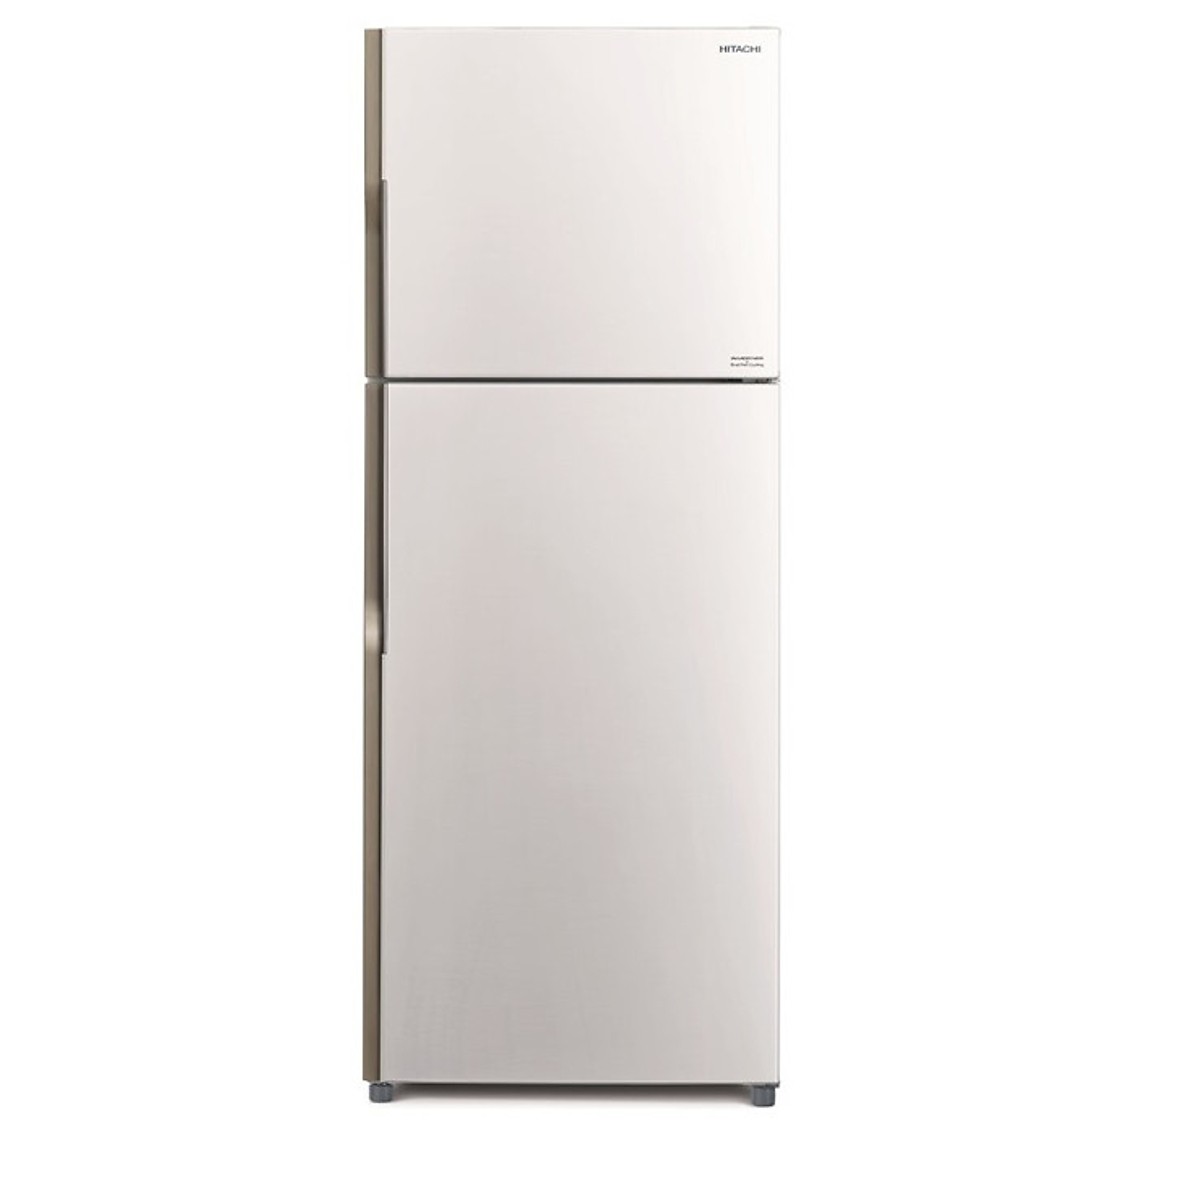 Tủ lạnh Hitachi 365 lít R-VG440PGV3-GPW - Hàng Chính Hãng + Tặng Bình Đun Siêu Tốc